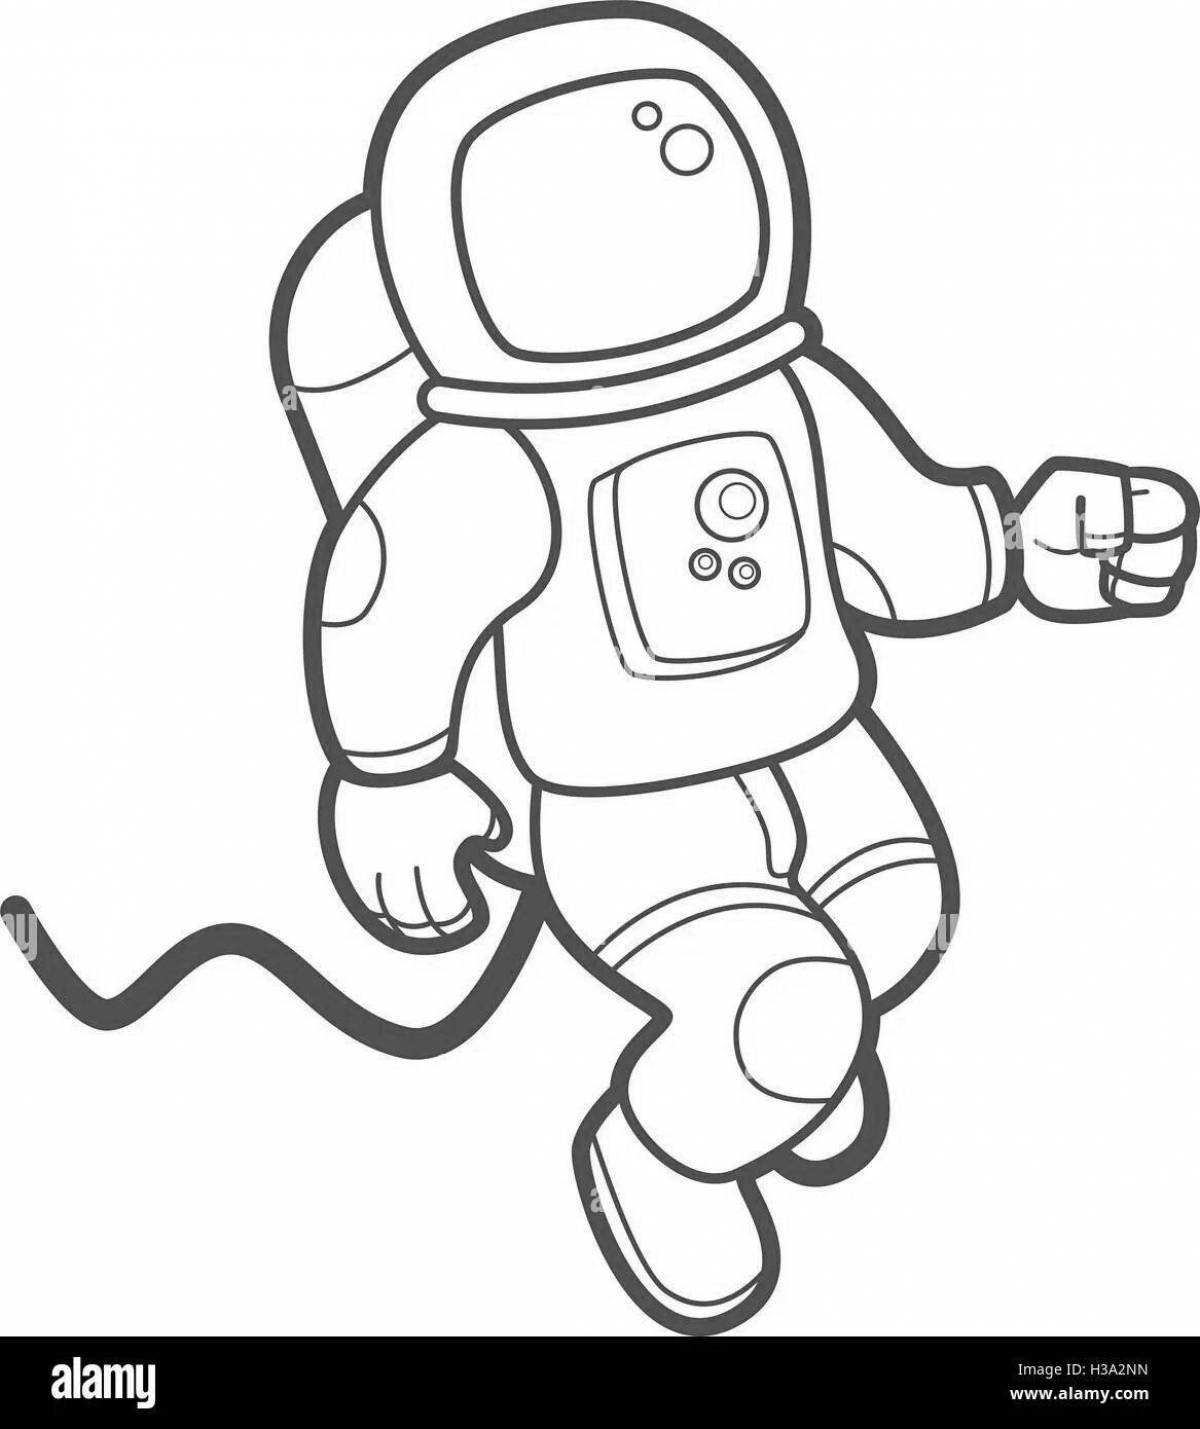 Как разукрасить космонавта. Космонавт раскраска. Раскраска космонавт в скафандре. Космонавт рисунок раскраска. Рисунок ребенка 2 класса карандашом - человек в скафандре.